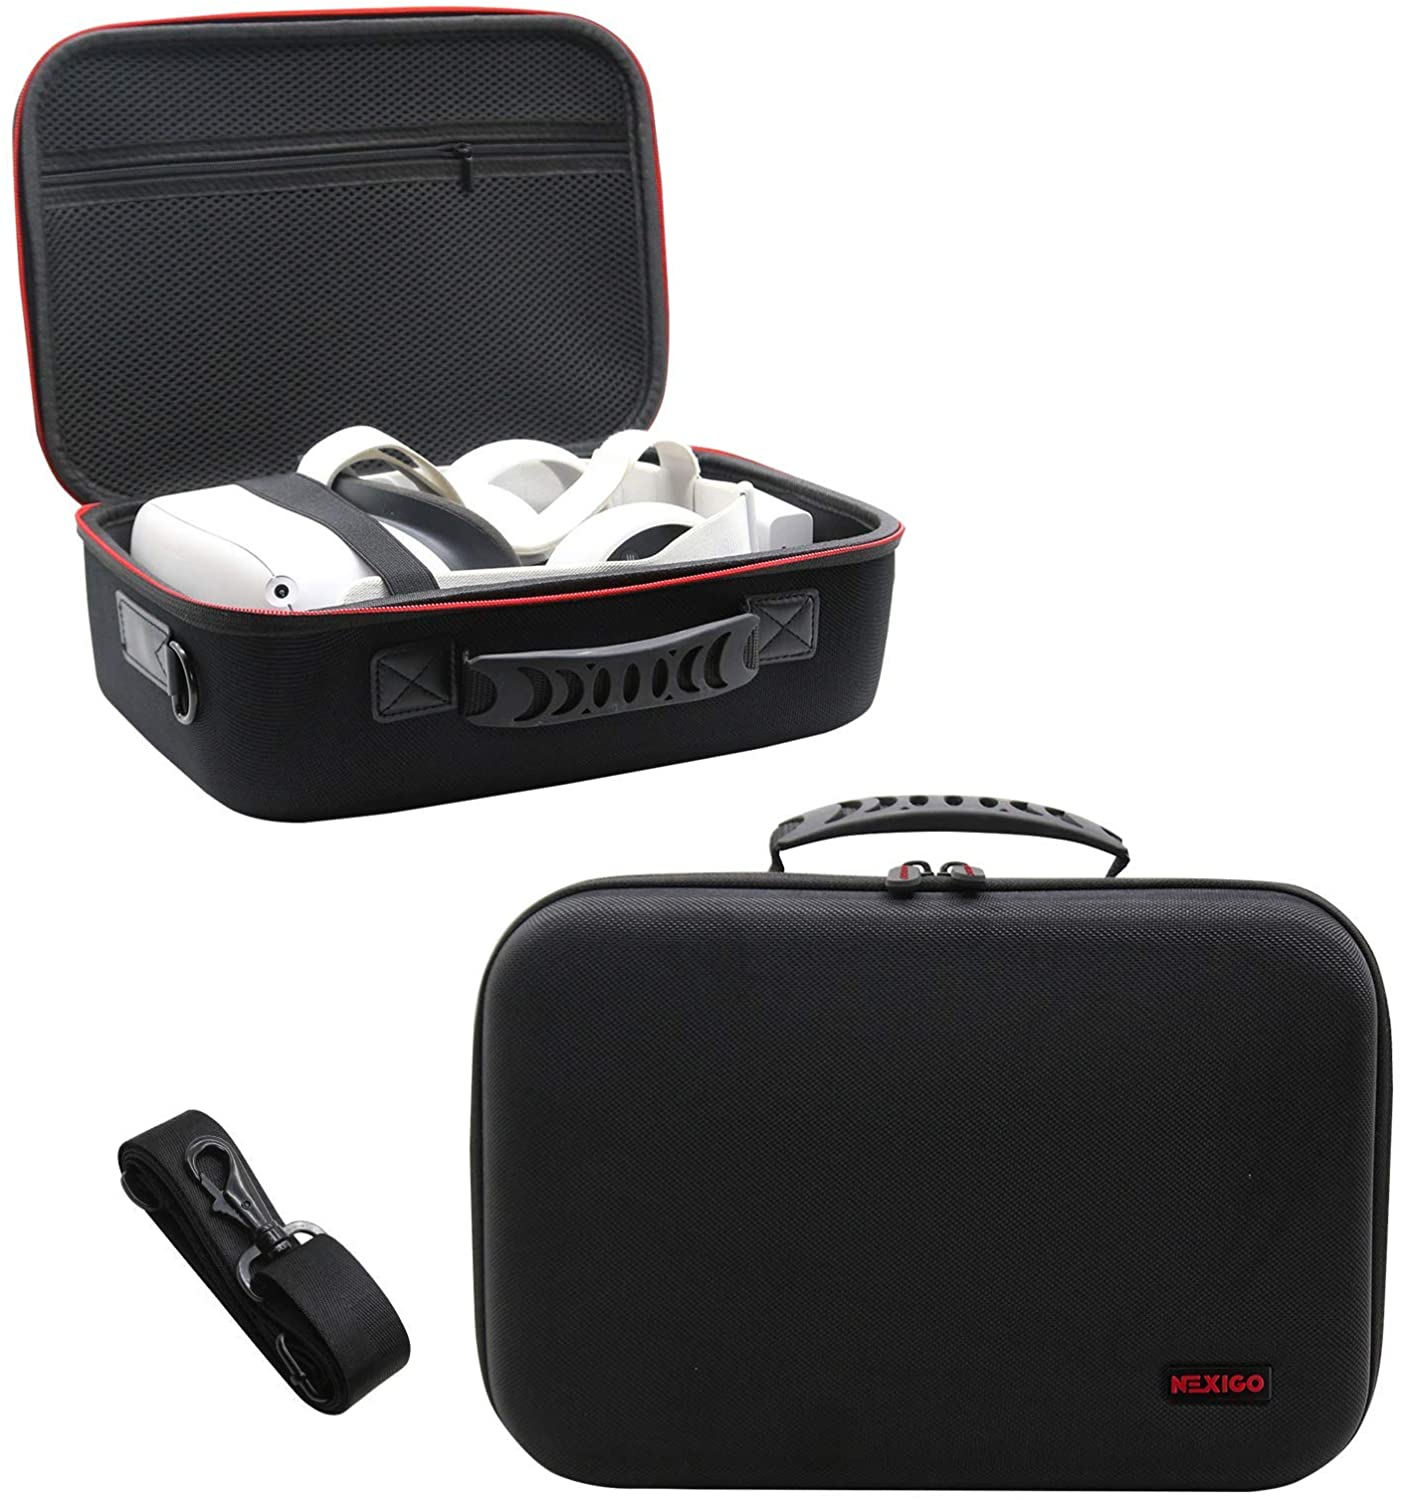 Black VR bag with handle and shoulder strap.